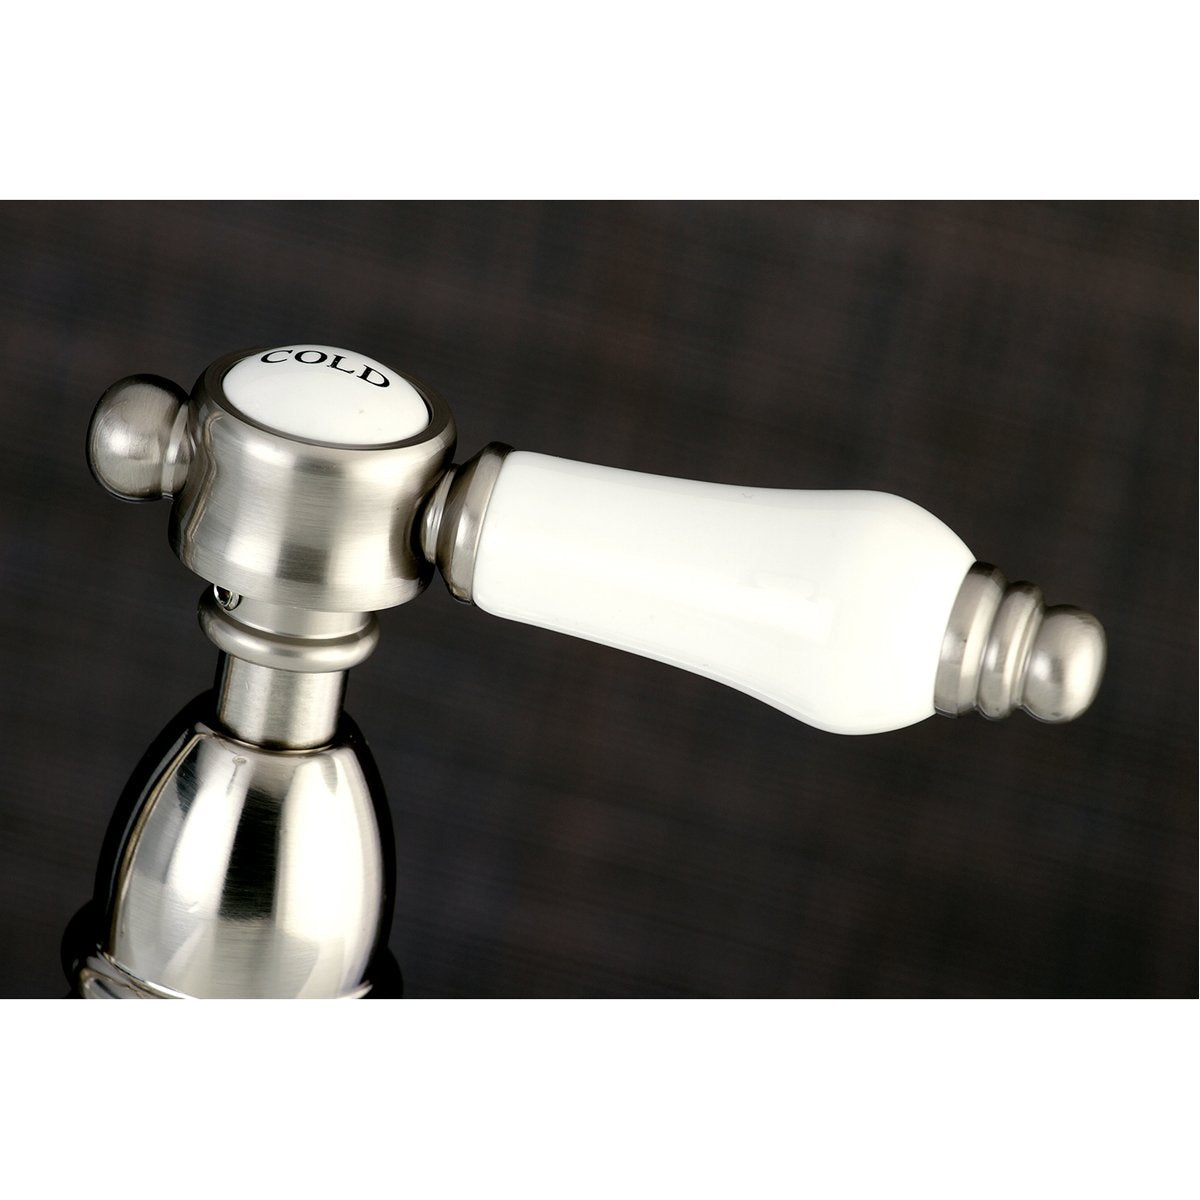 Kingston Brass 8" Centerset Kitchen Faucet Less Sprayer